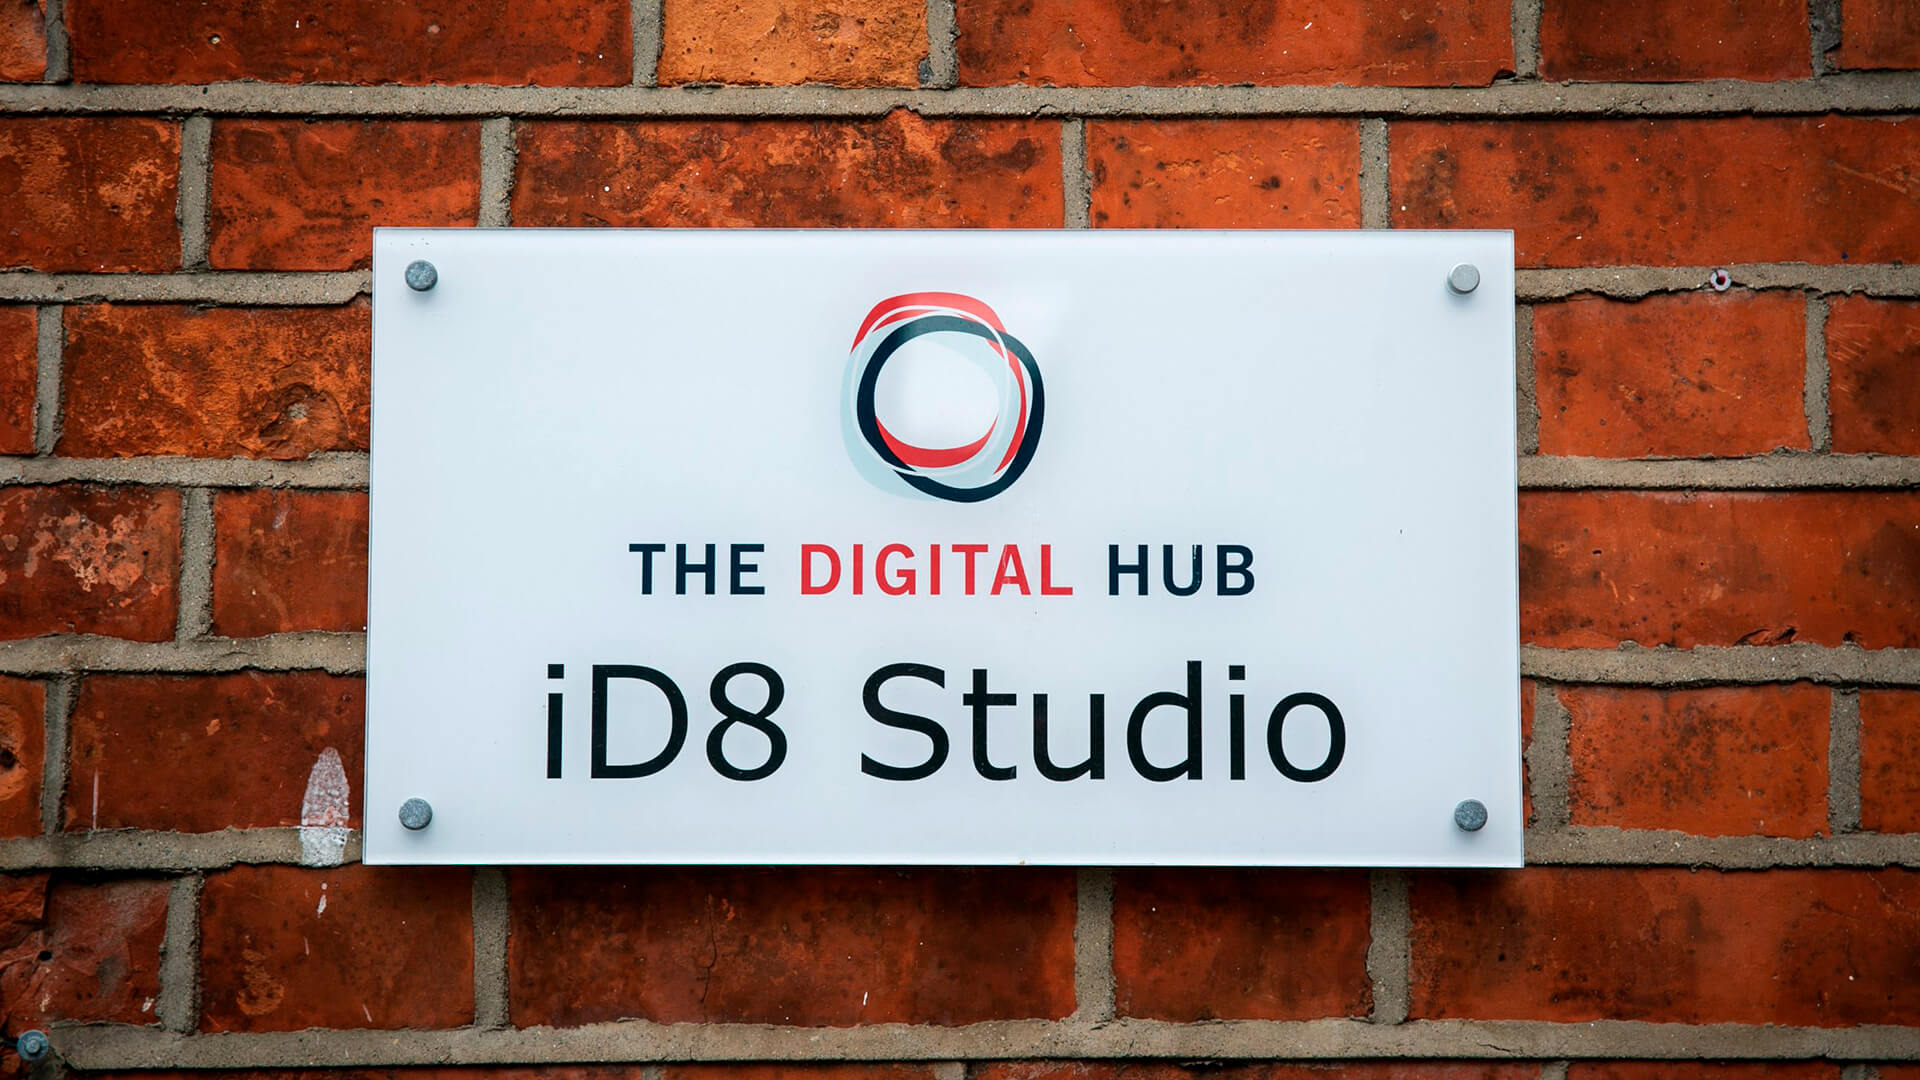 A sign on a brick wall reads: "The Digital Hub iD8 Studio"